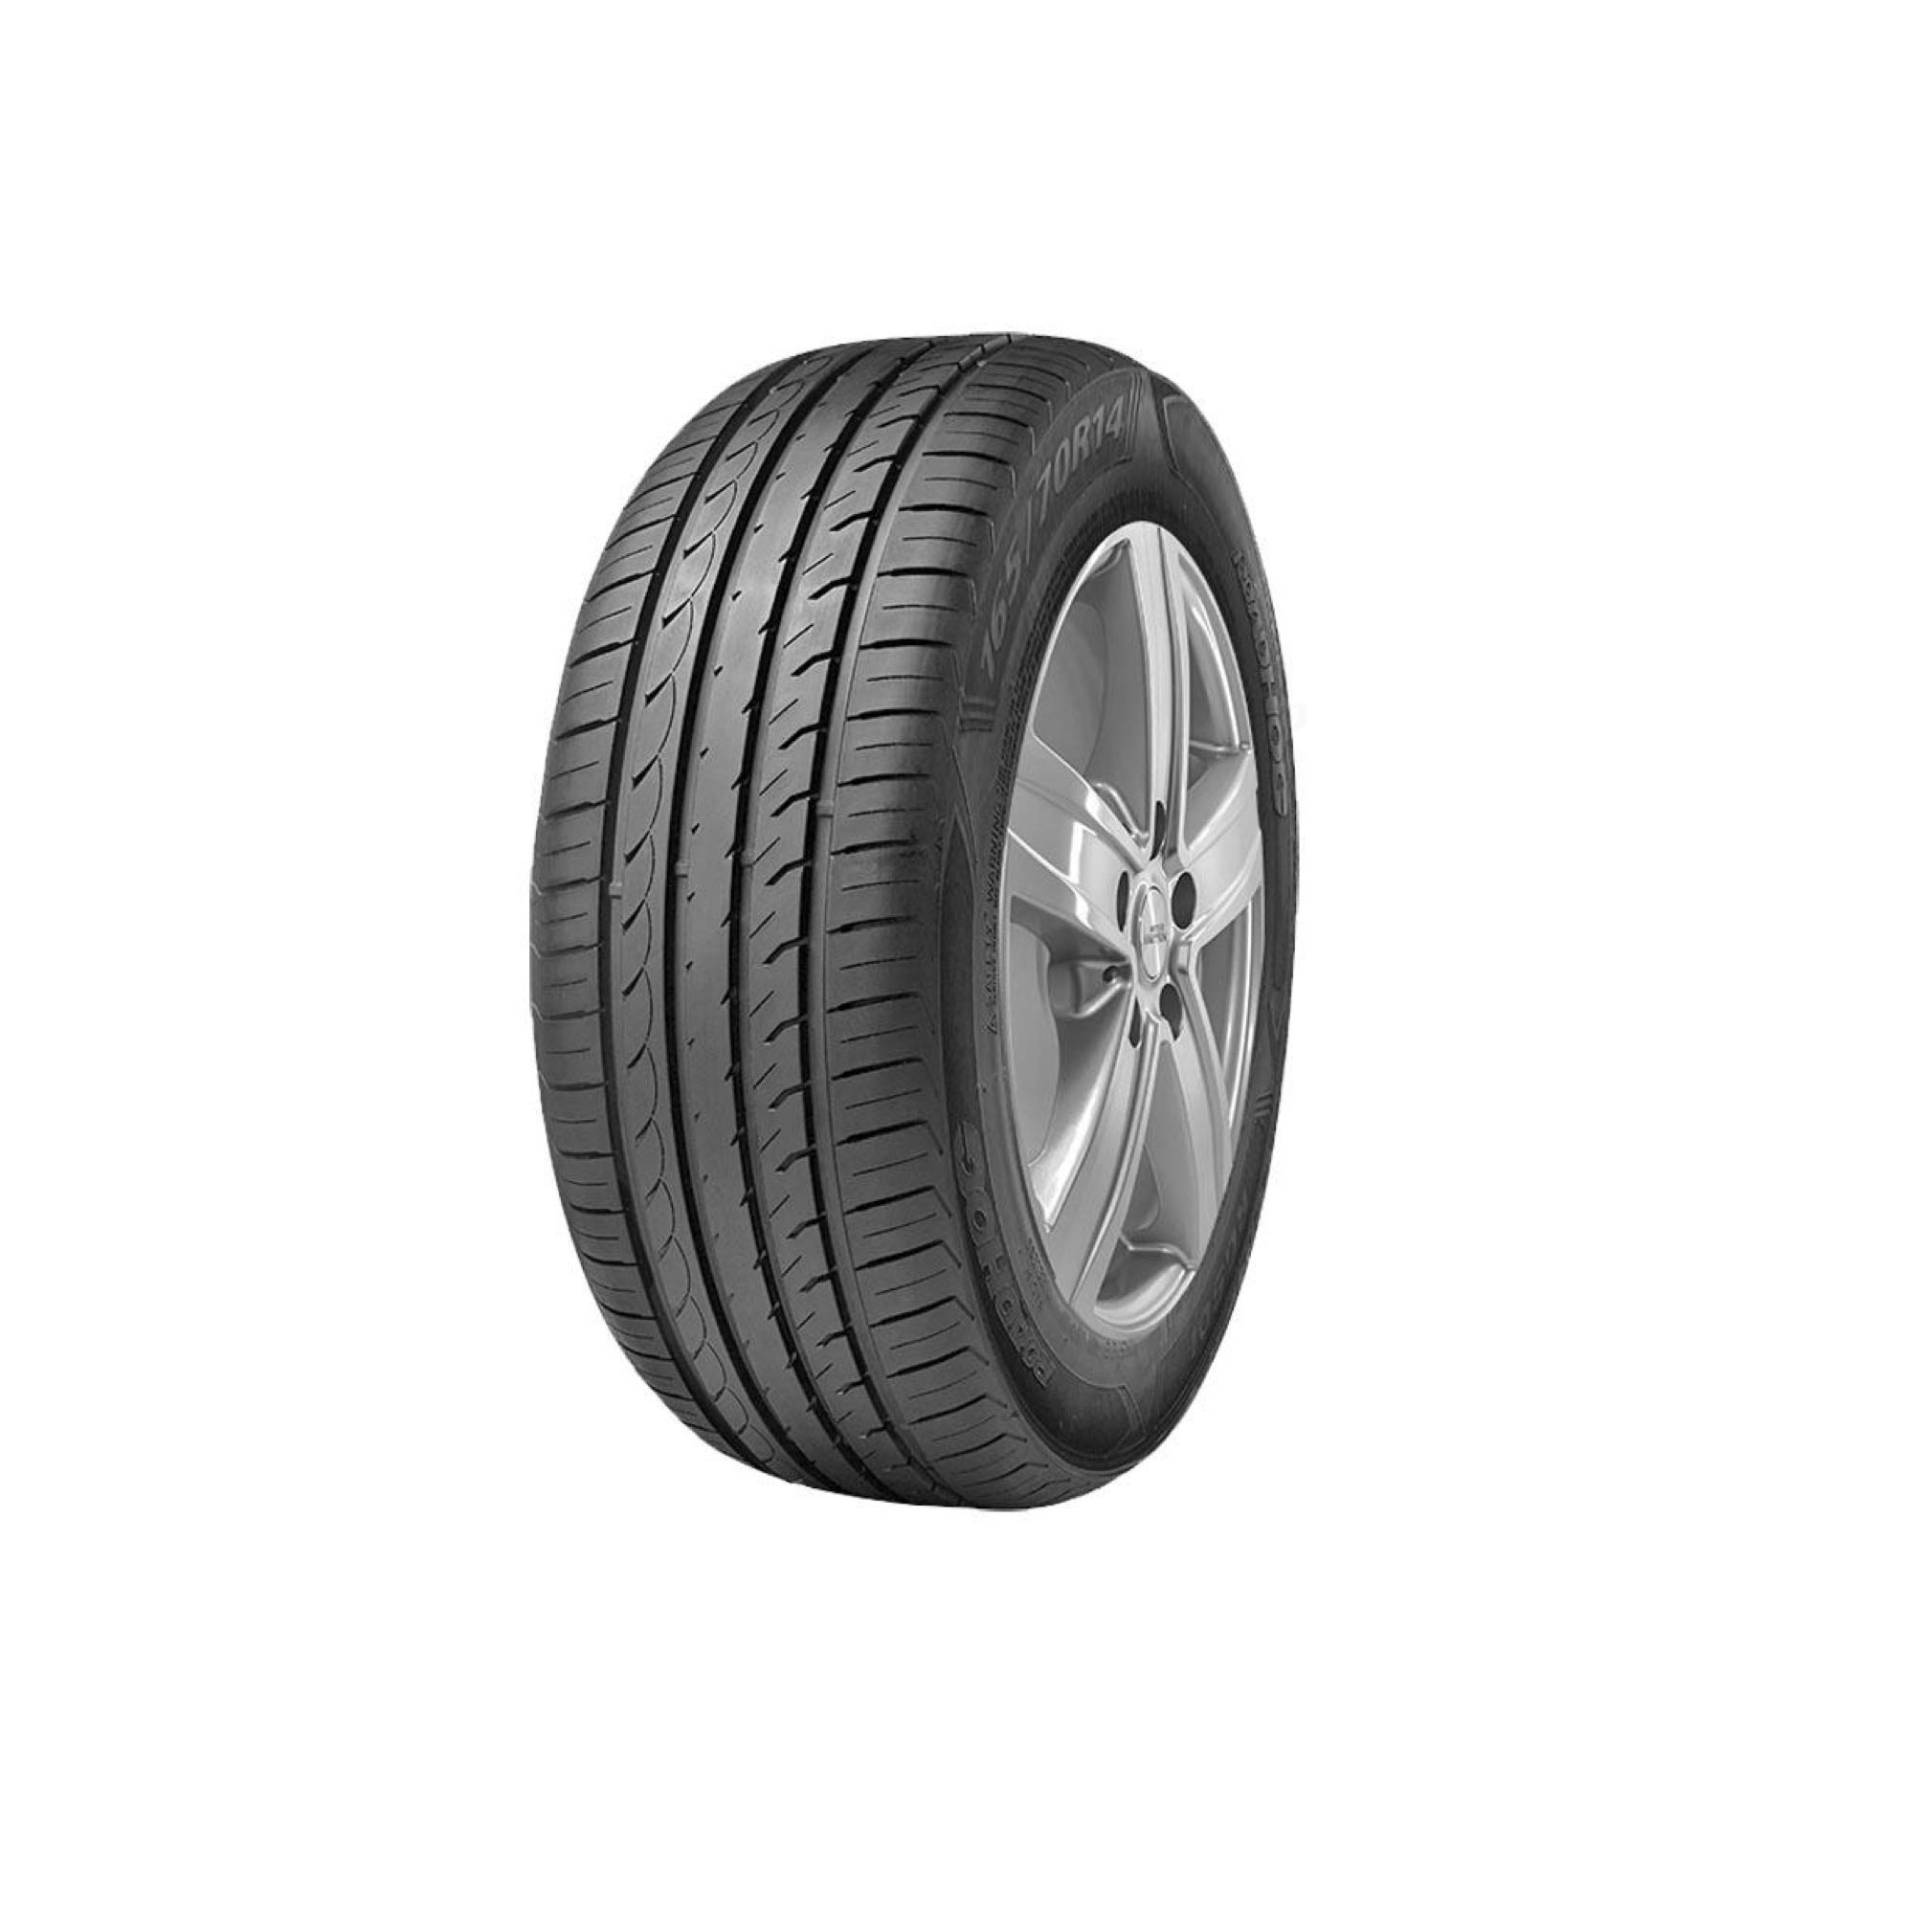 Reifen pneus Roadhog Rg s01 165 70 R13 79T TL sommerreifen autoreifen von Roadhog